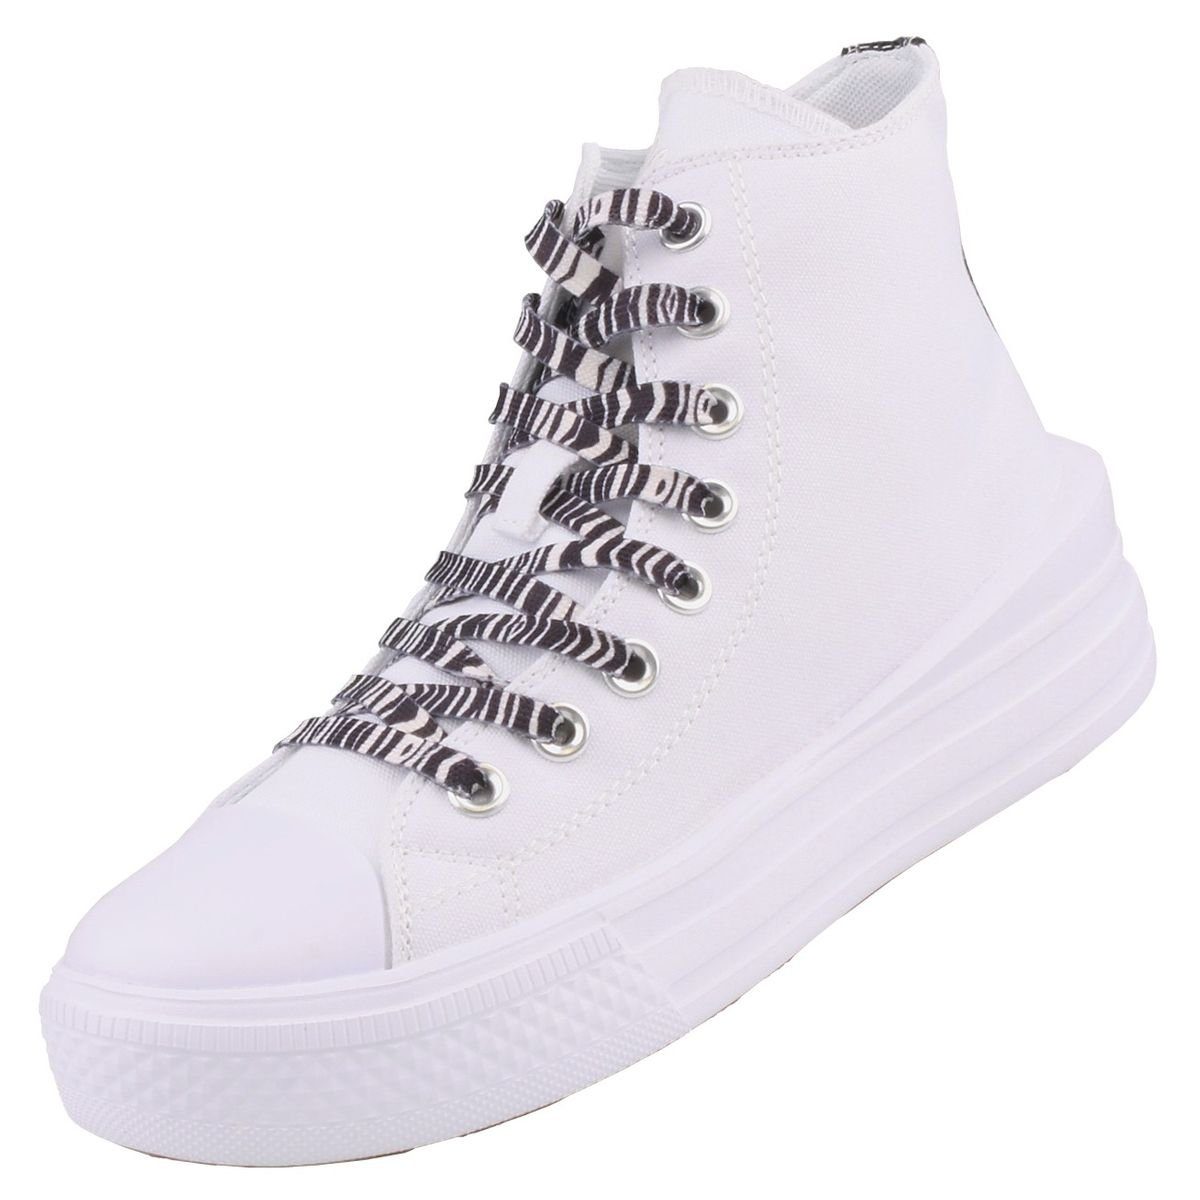 Dockers Sneaker Gerli 50VL202-710500 by